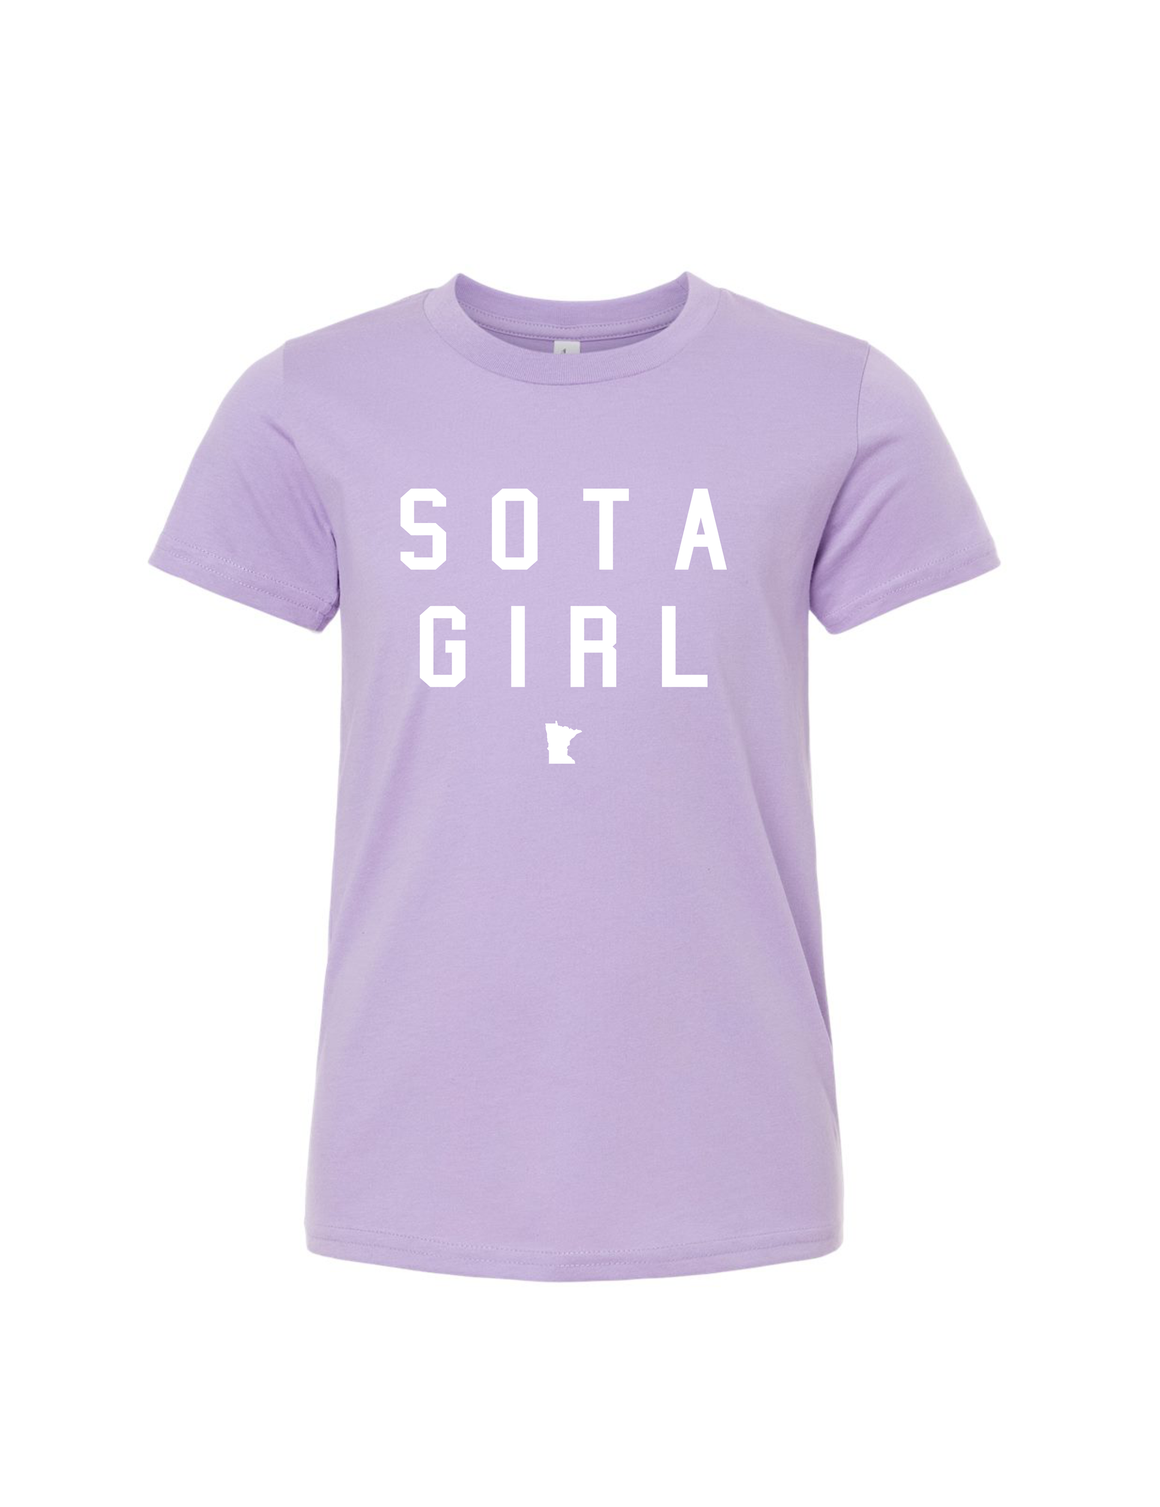 Youth Sota Girl Tee [lilac] - Northern Print Co.